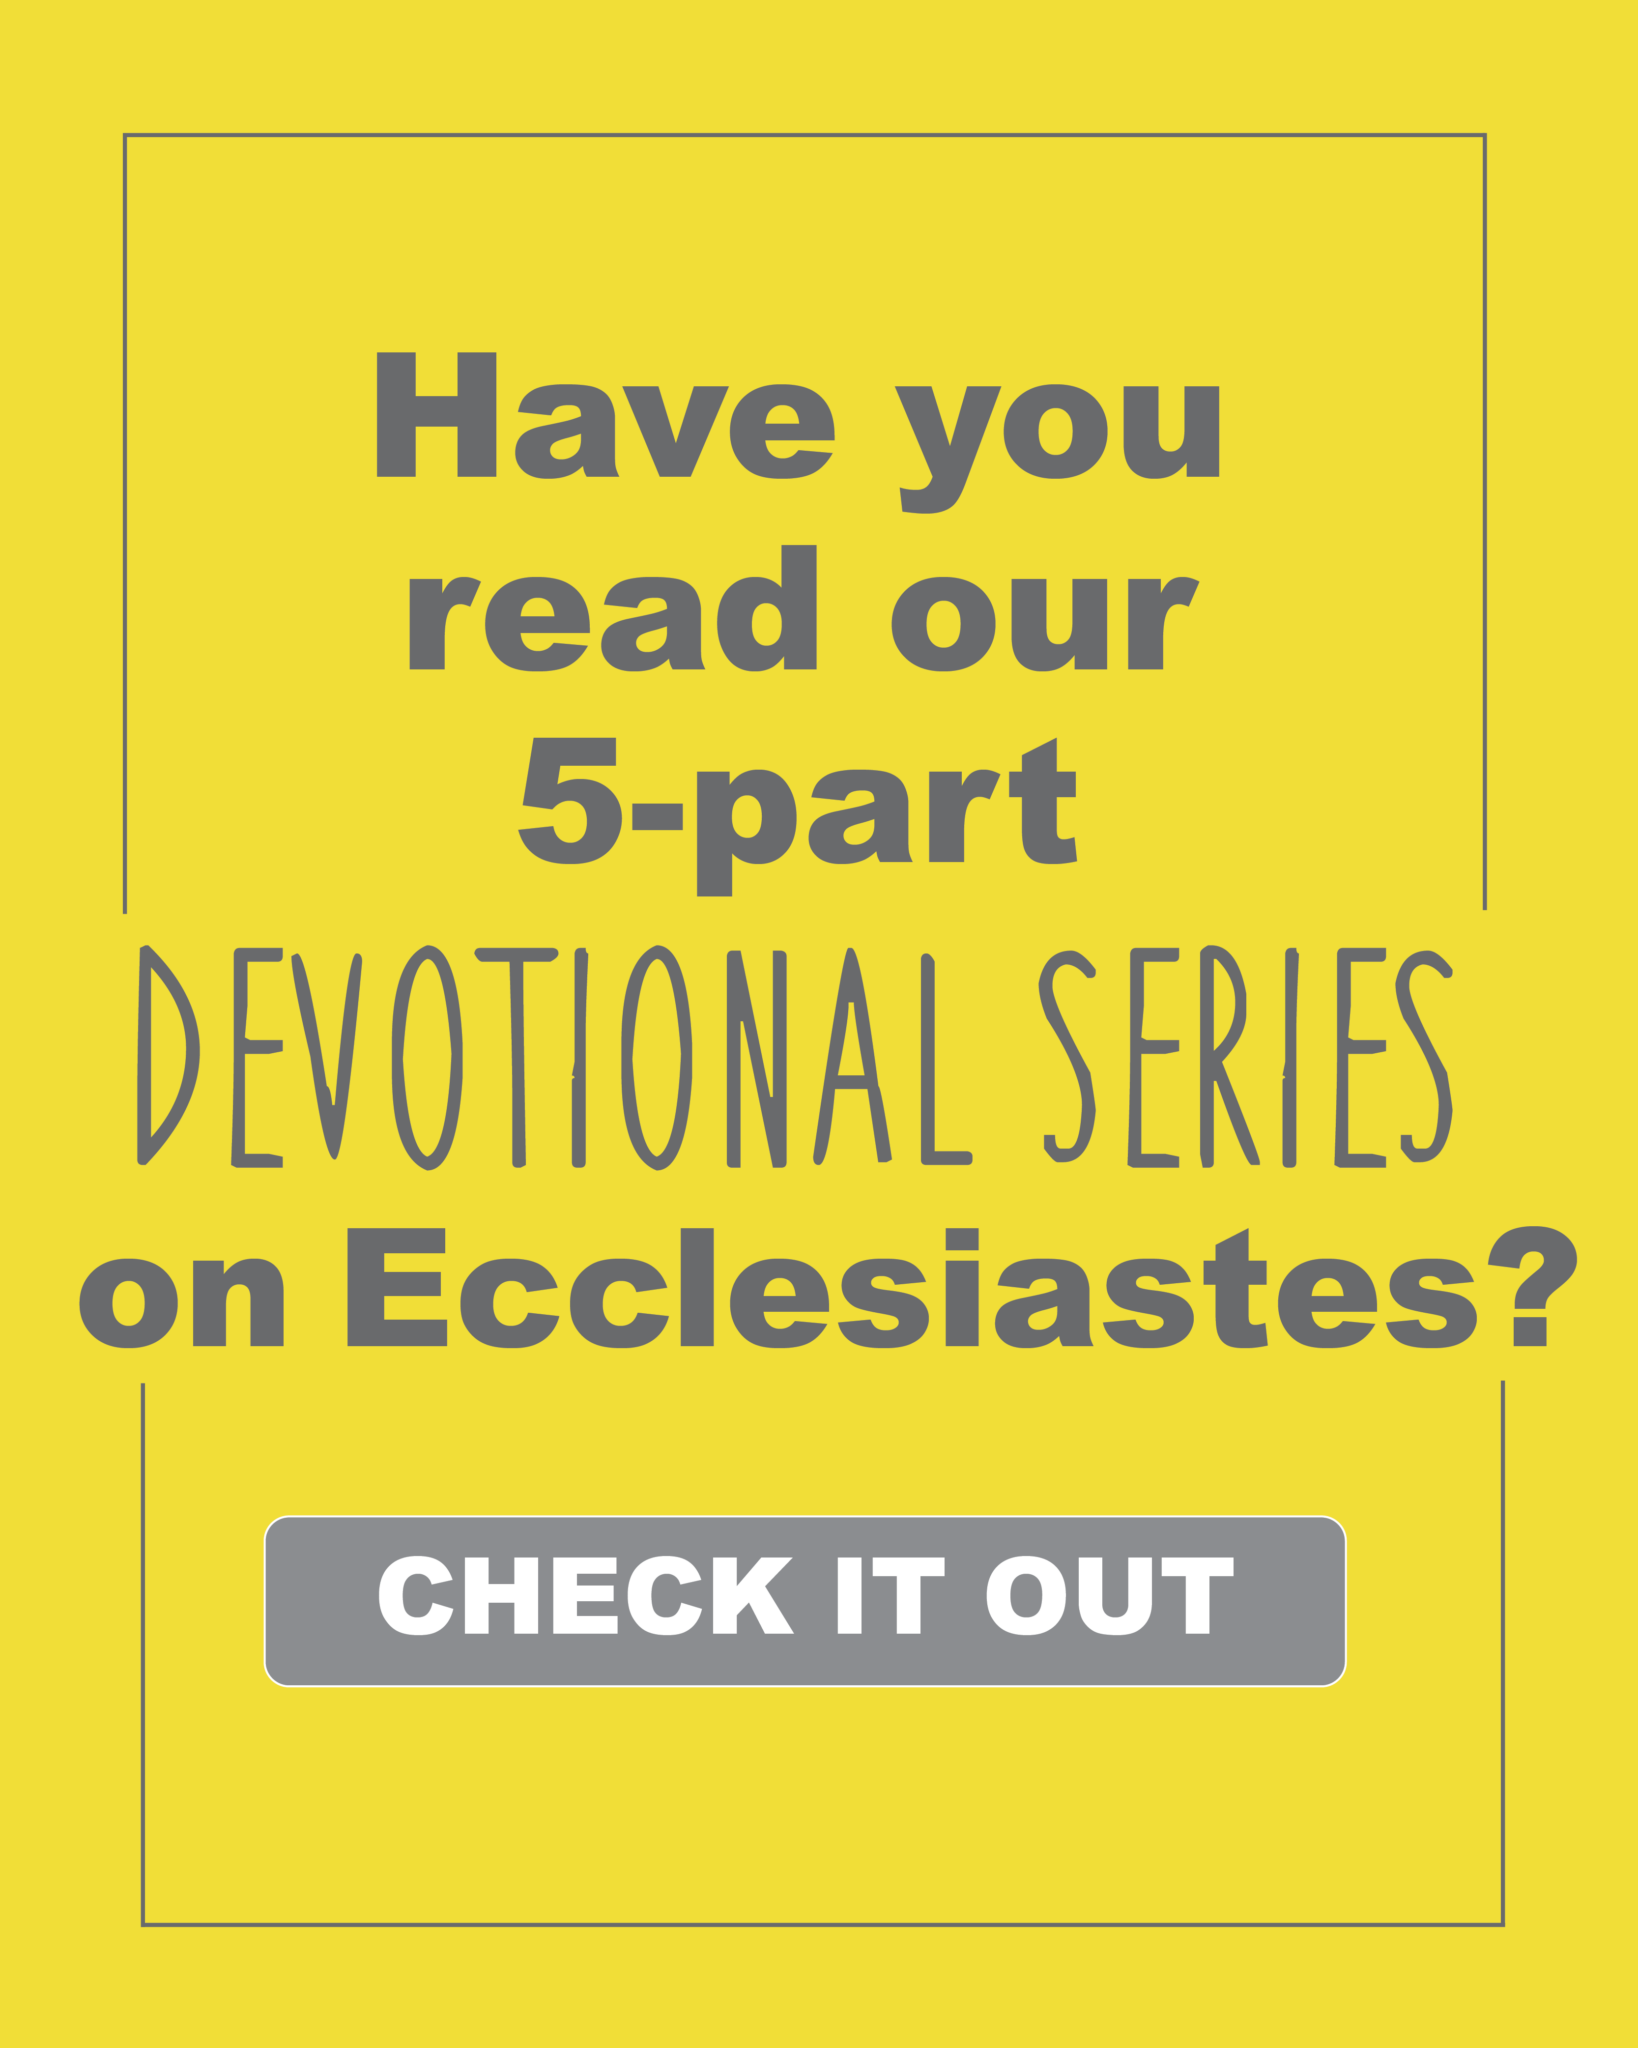 Yellow Balloons, Ecclesiastes, Devotional